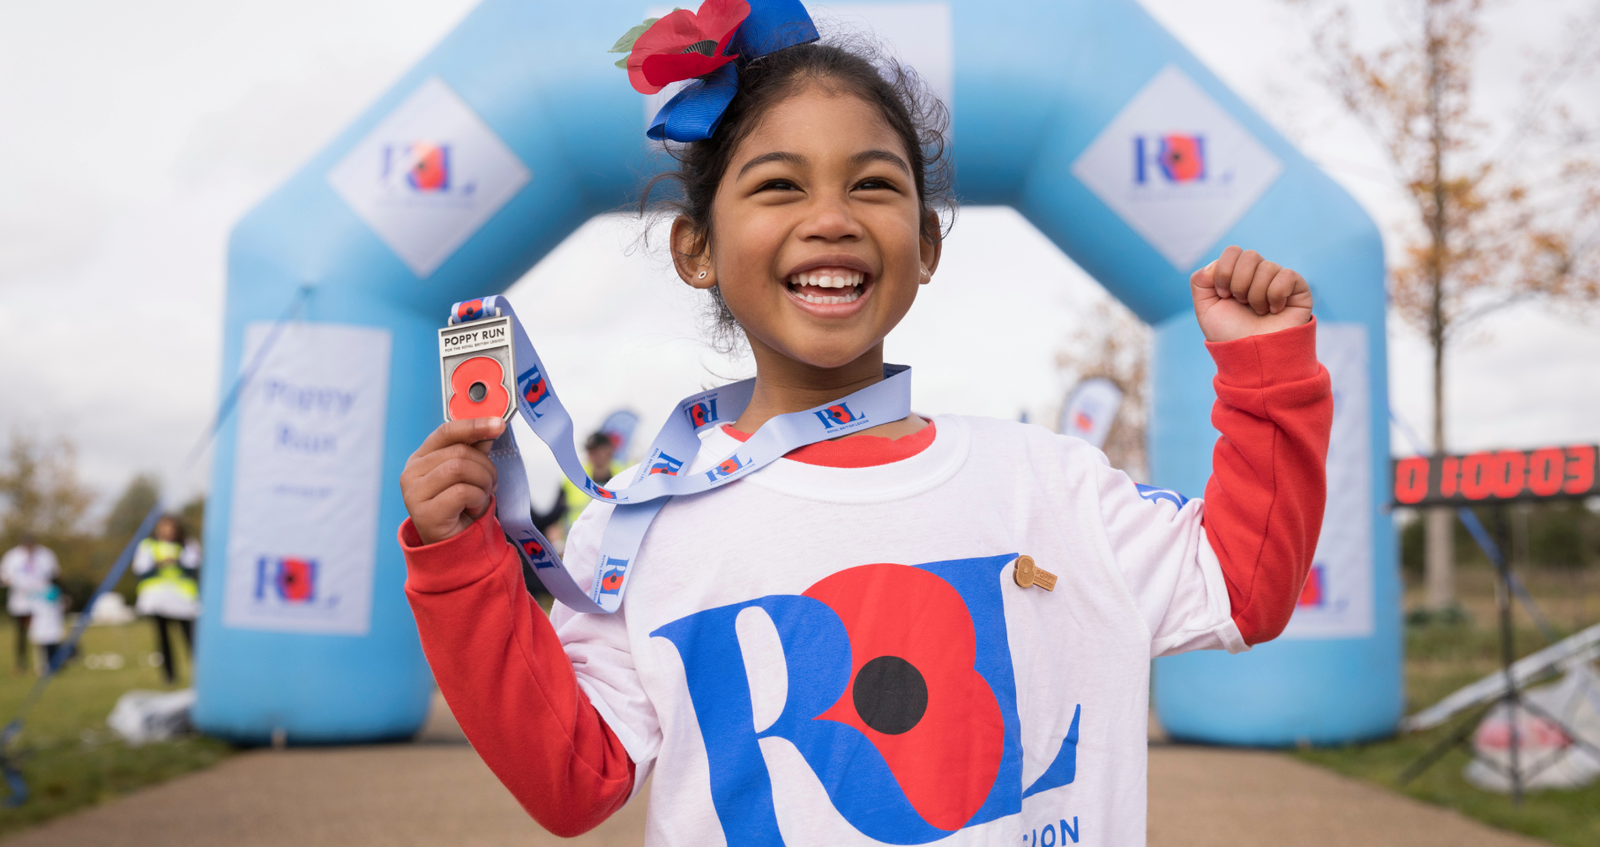 Girl showing off her Poppy Run medal